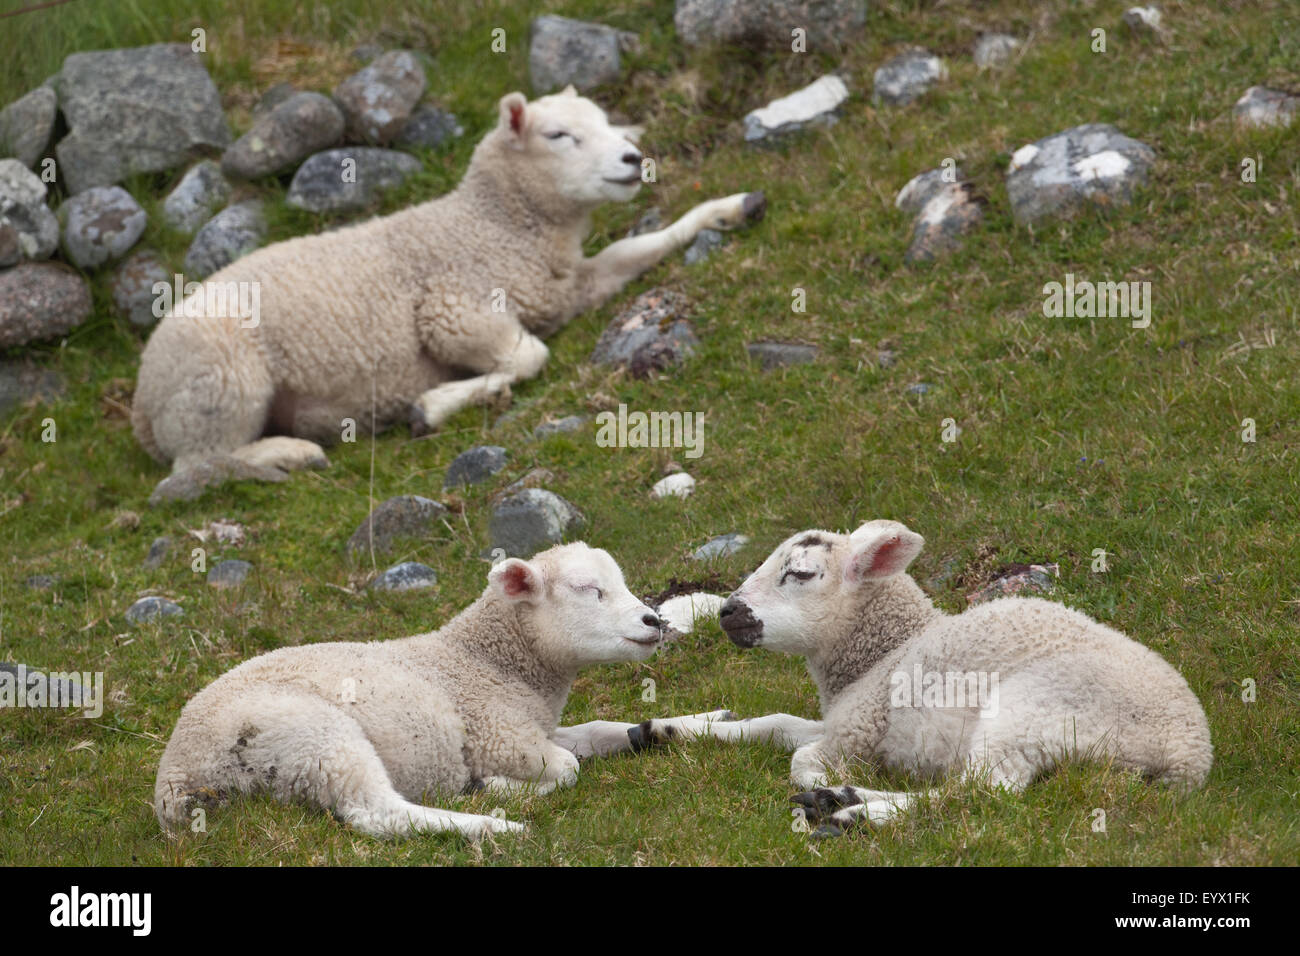 Les moutons. Trois agneaux sevrés Texel cross, 'mâchant le cud'. Mai. Iona. L'Écosse. Banque D'Images